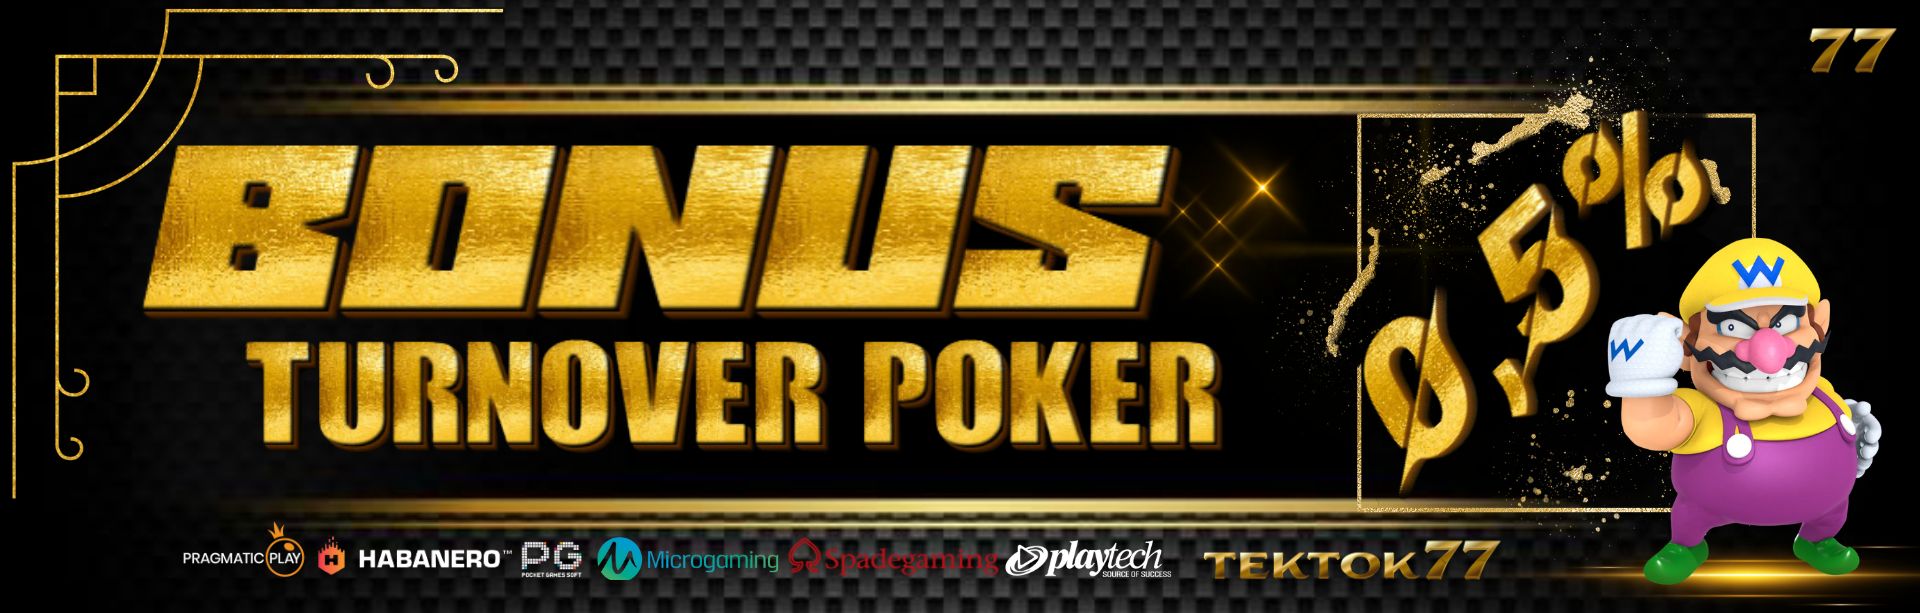 Turnover Poker